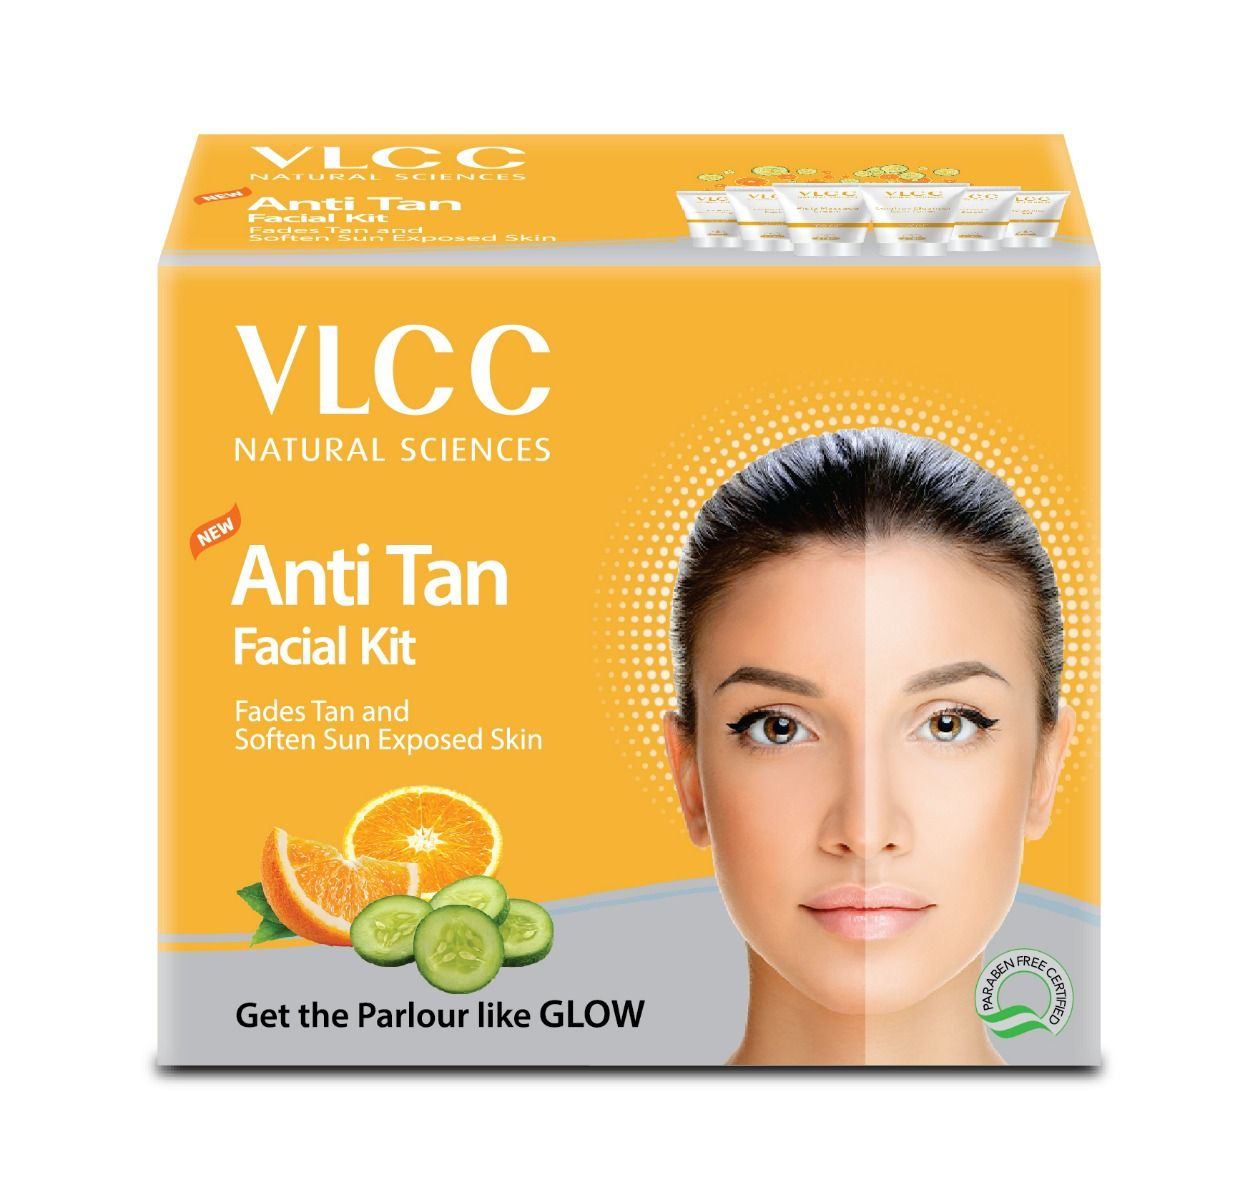 VLCC New Anti Tan Facial Kit, 1 Count, Pack of 1 